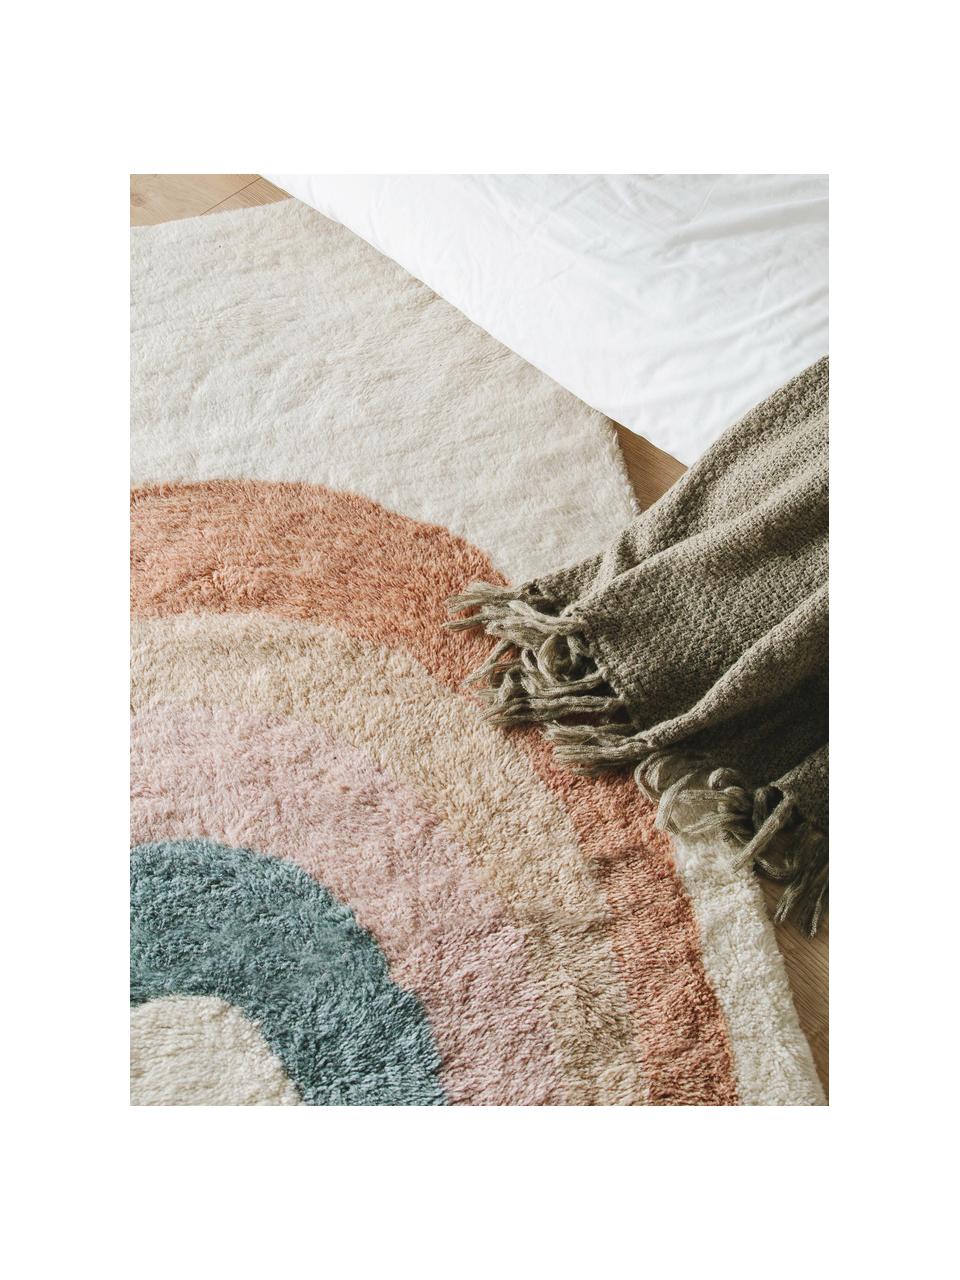 Ručne tuftovaný detský vlnený koberec so strapcami Rainbow, 100 % vlna

V prvých týždňoch používania môžu vlnené koberce uvoľňovať vlákna, tento jav zmizne po niekoľkých týždňoch používania, Svetlobéžová, viac farieb, Š 80 x D 120 cm (veľkosť XS)